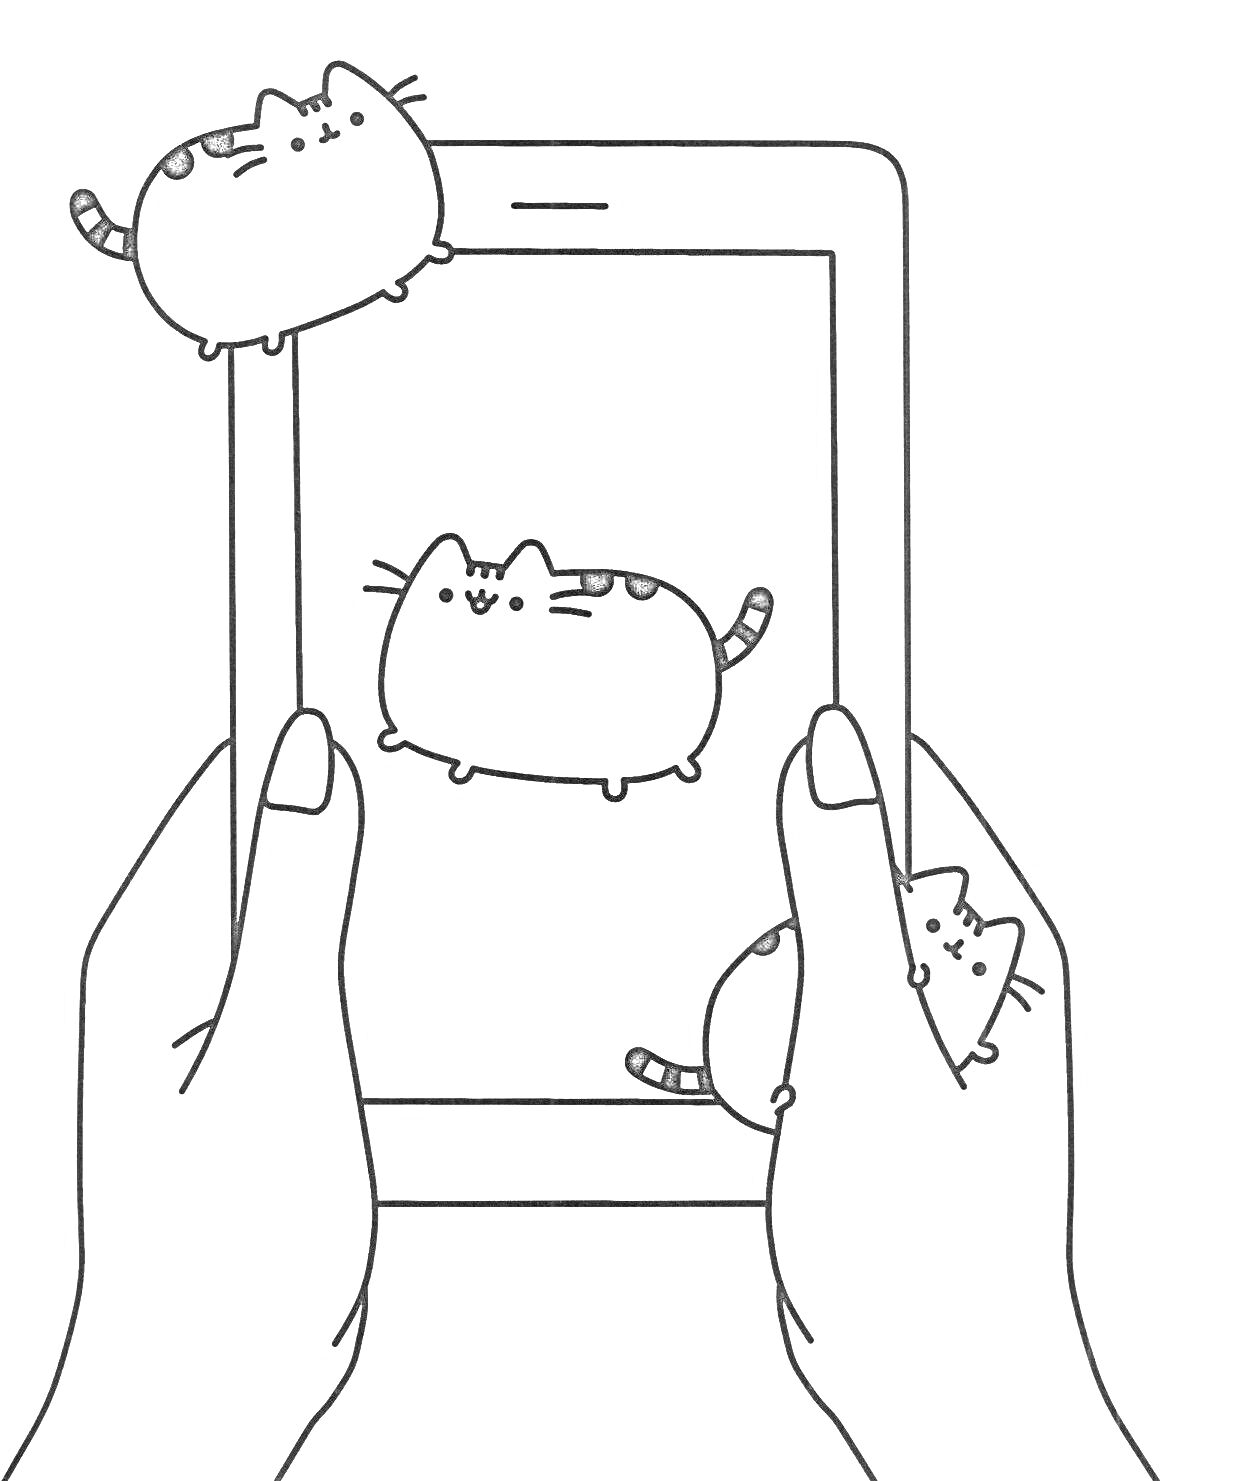 Раскраска Руки, держащие планшет с изображением кота Пушина и кот Пушин снаружи планшета